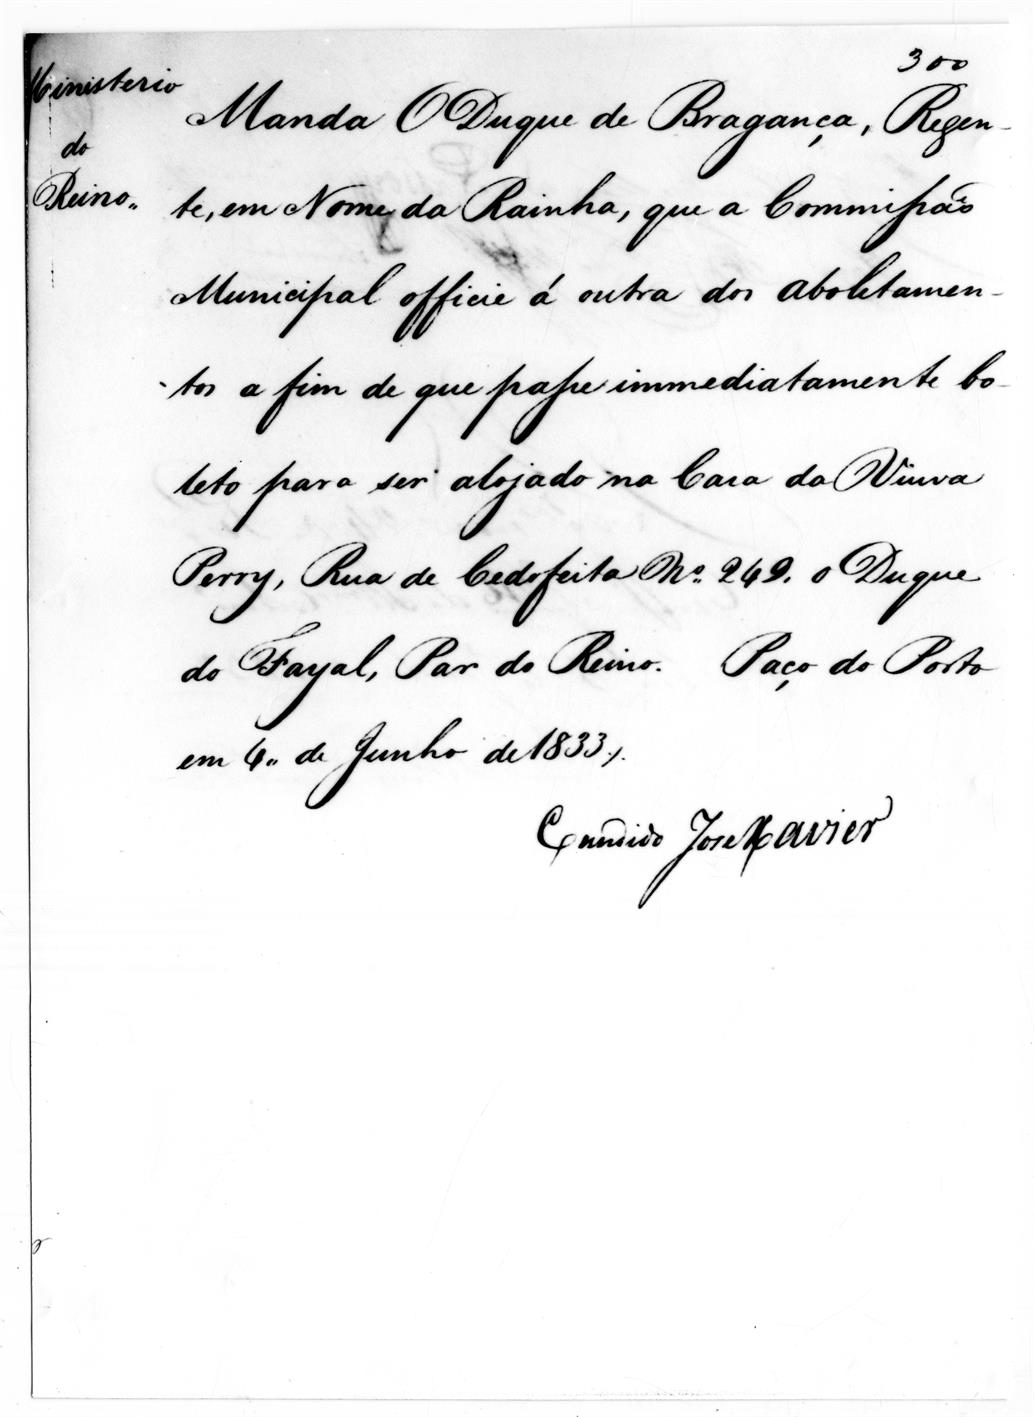 O cerco do Porto : exposição comemorativa do 150º aniversário : documento manuscrito do tempo do cerco